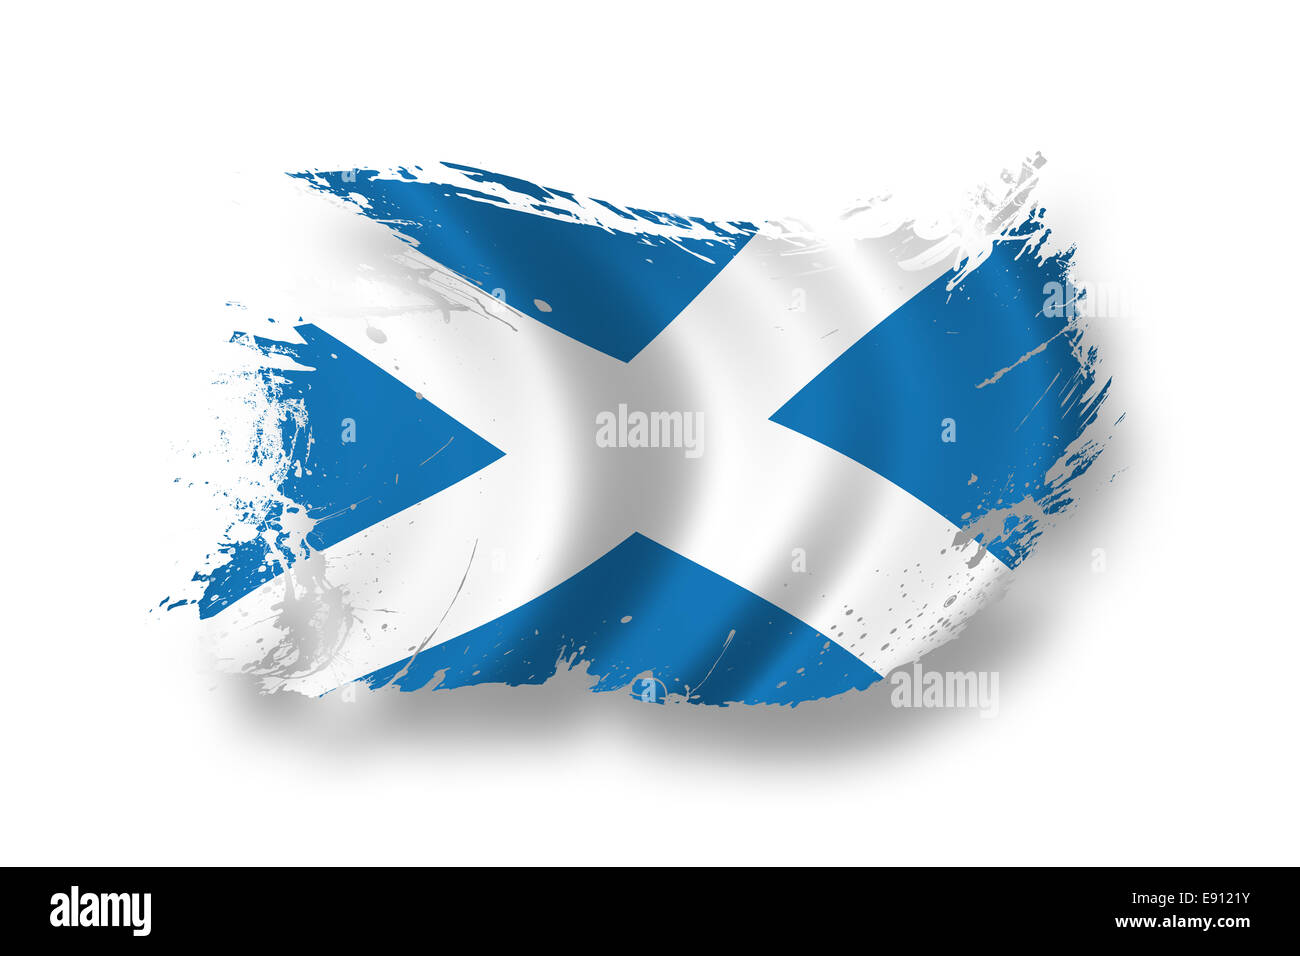 Stockflagge Schottland 